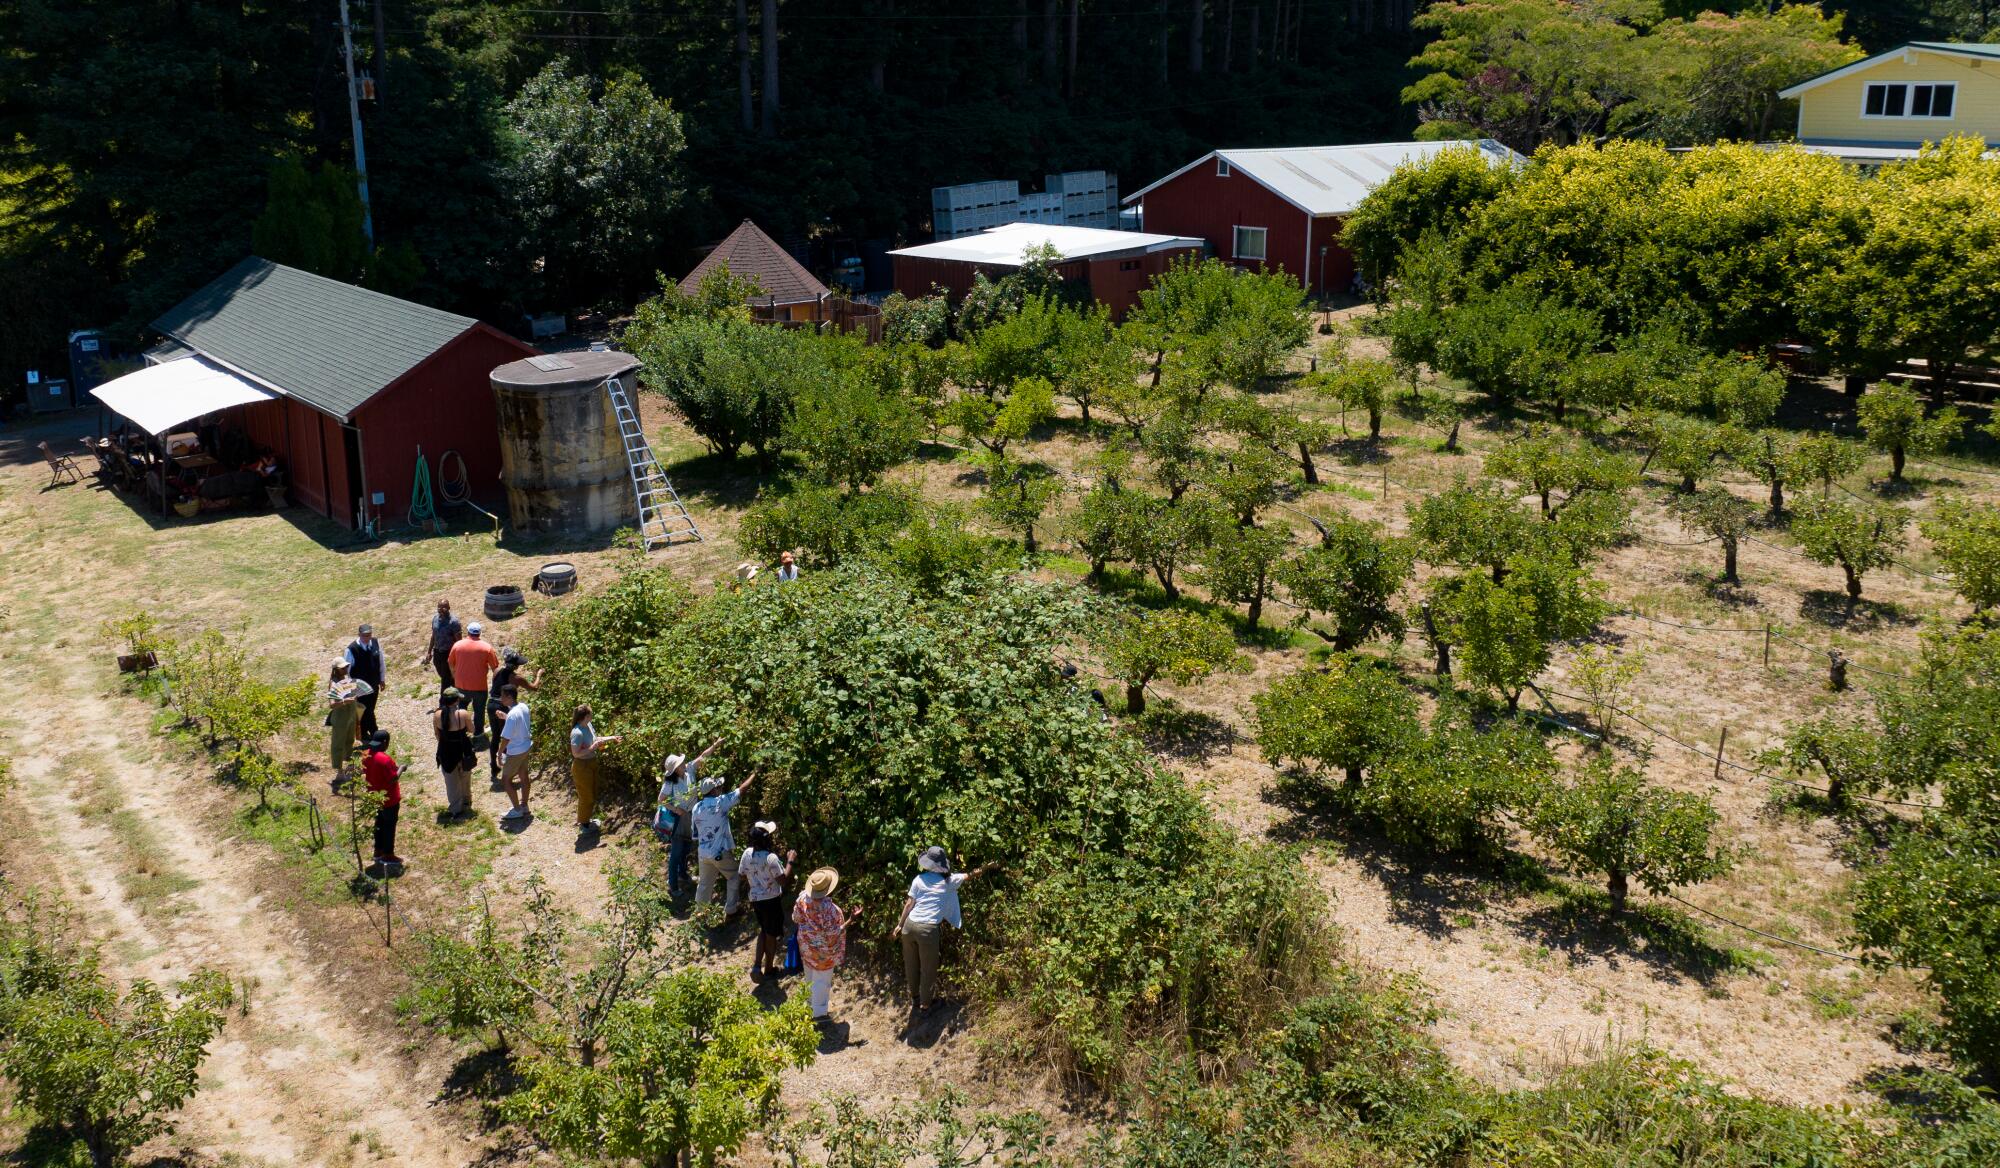 A U-pick group picks berries at EARTHseed Farm.